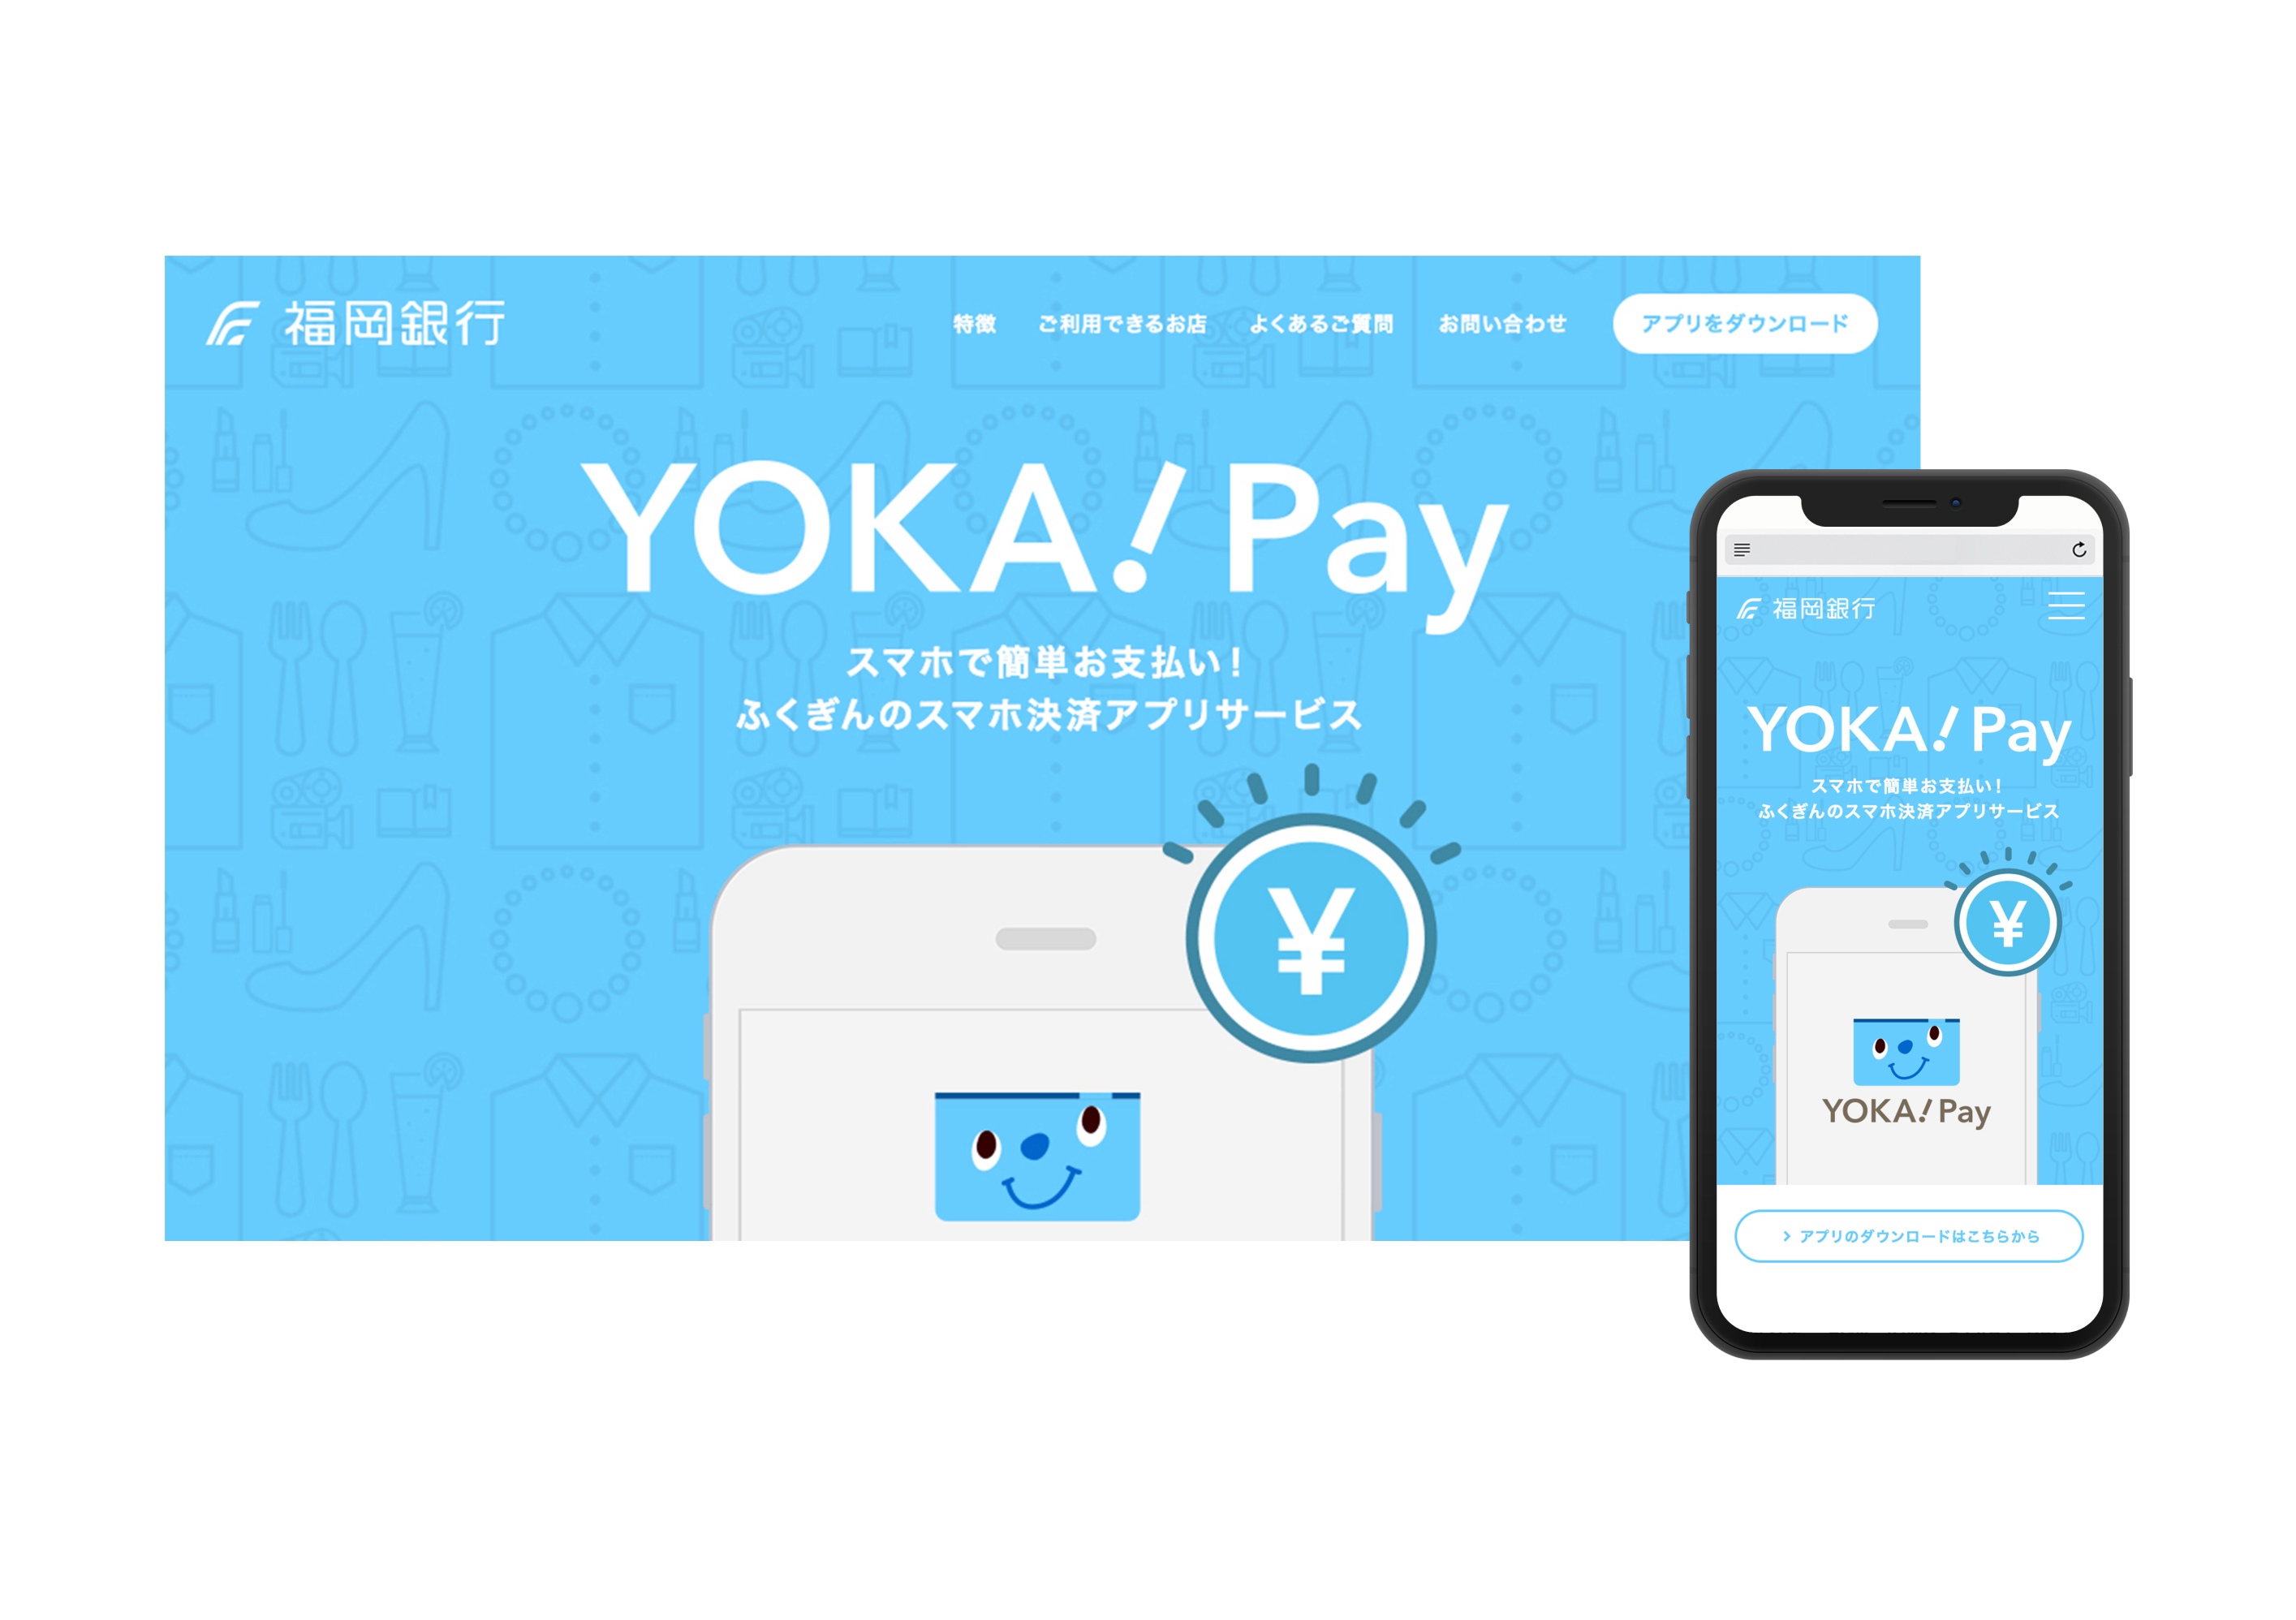 ふくおかフィナンシャルグループ YOKA!Pay